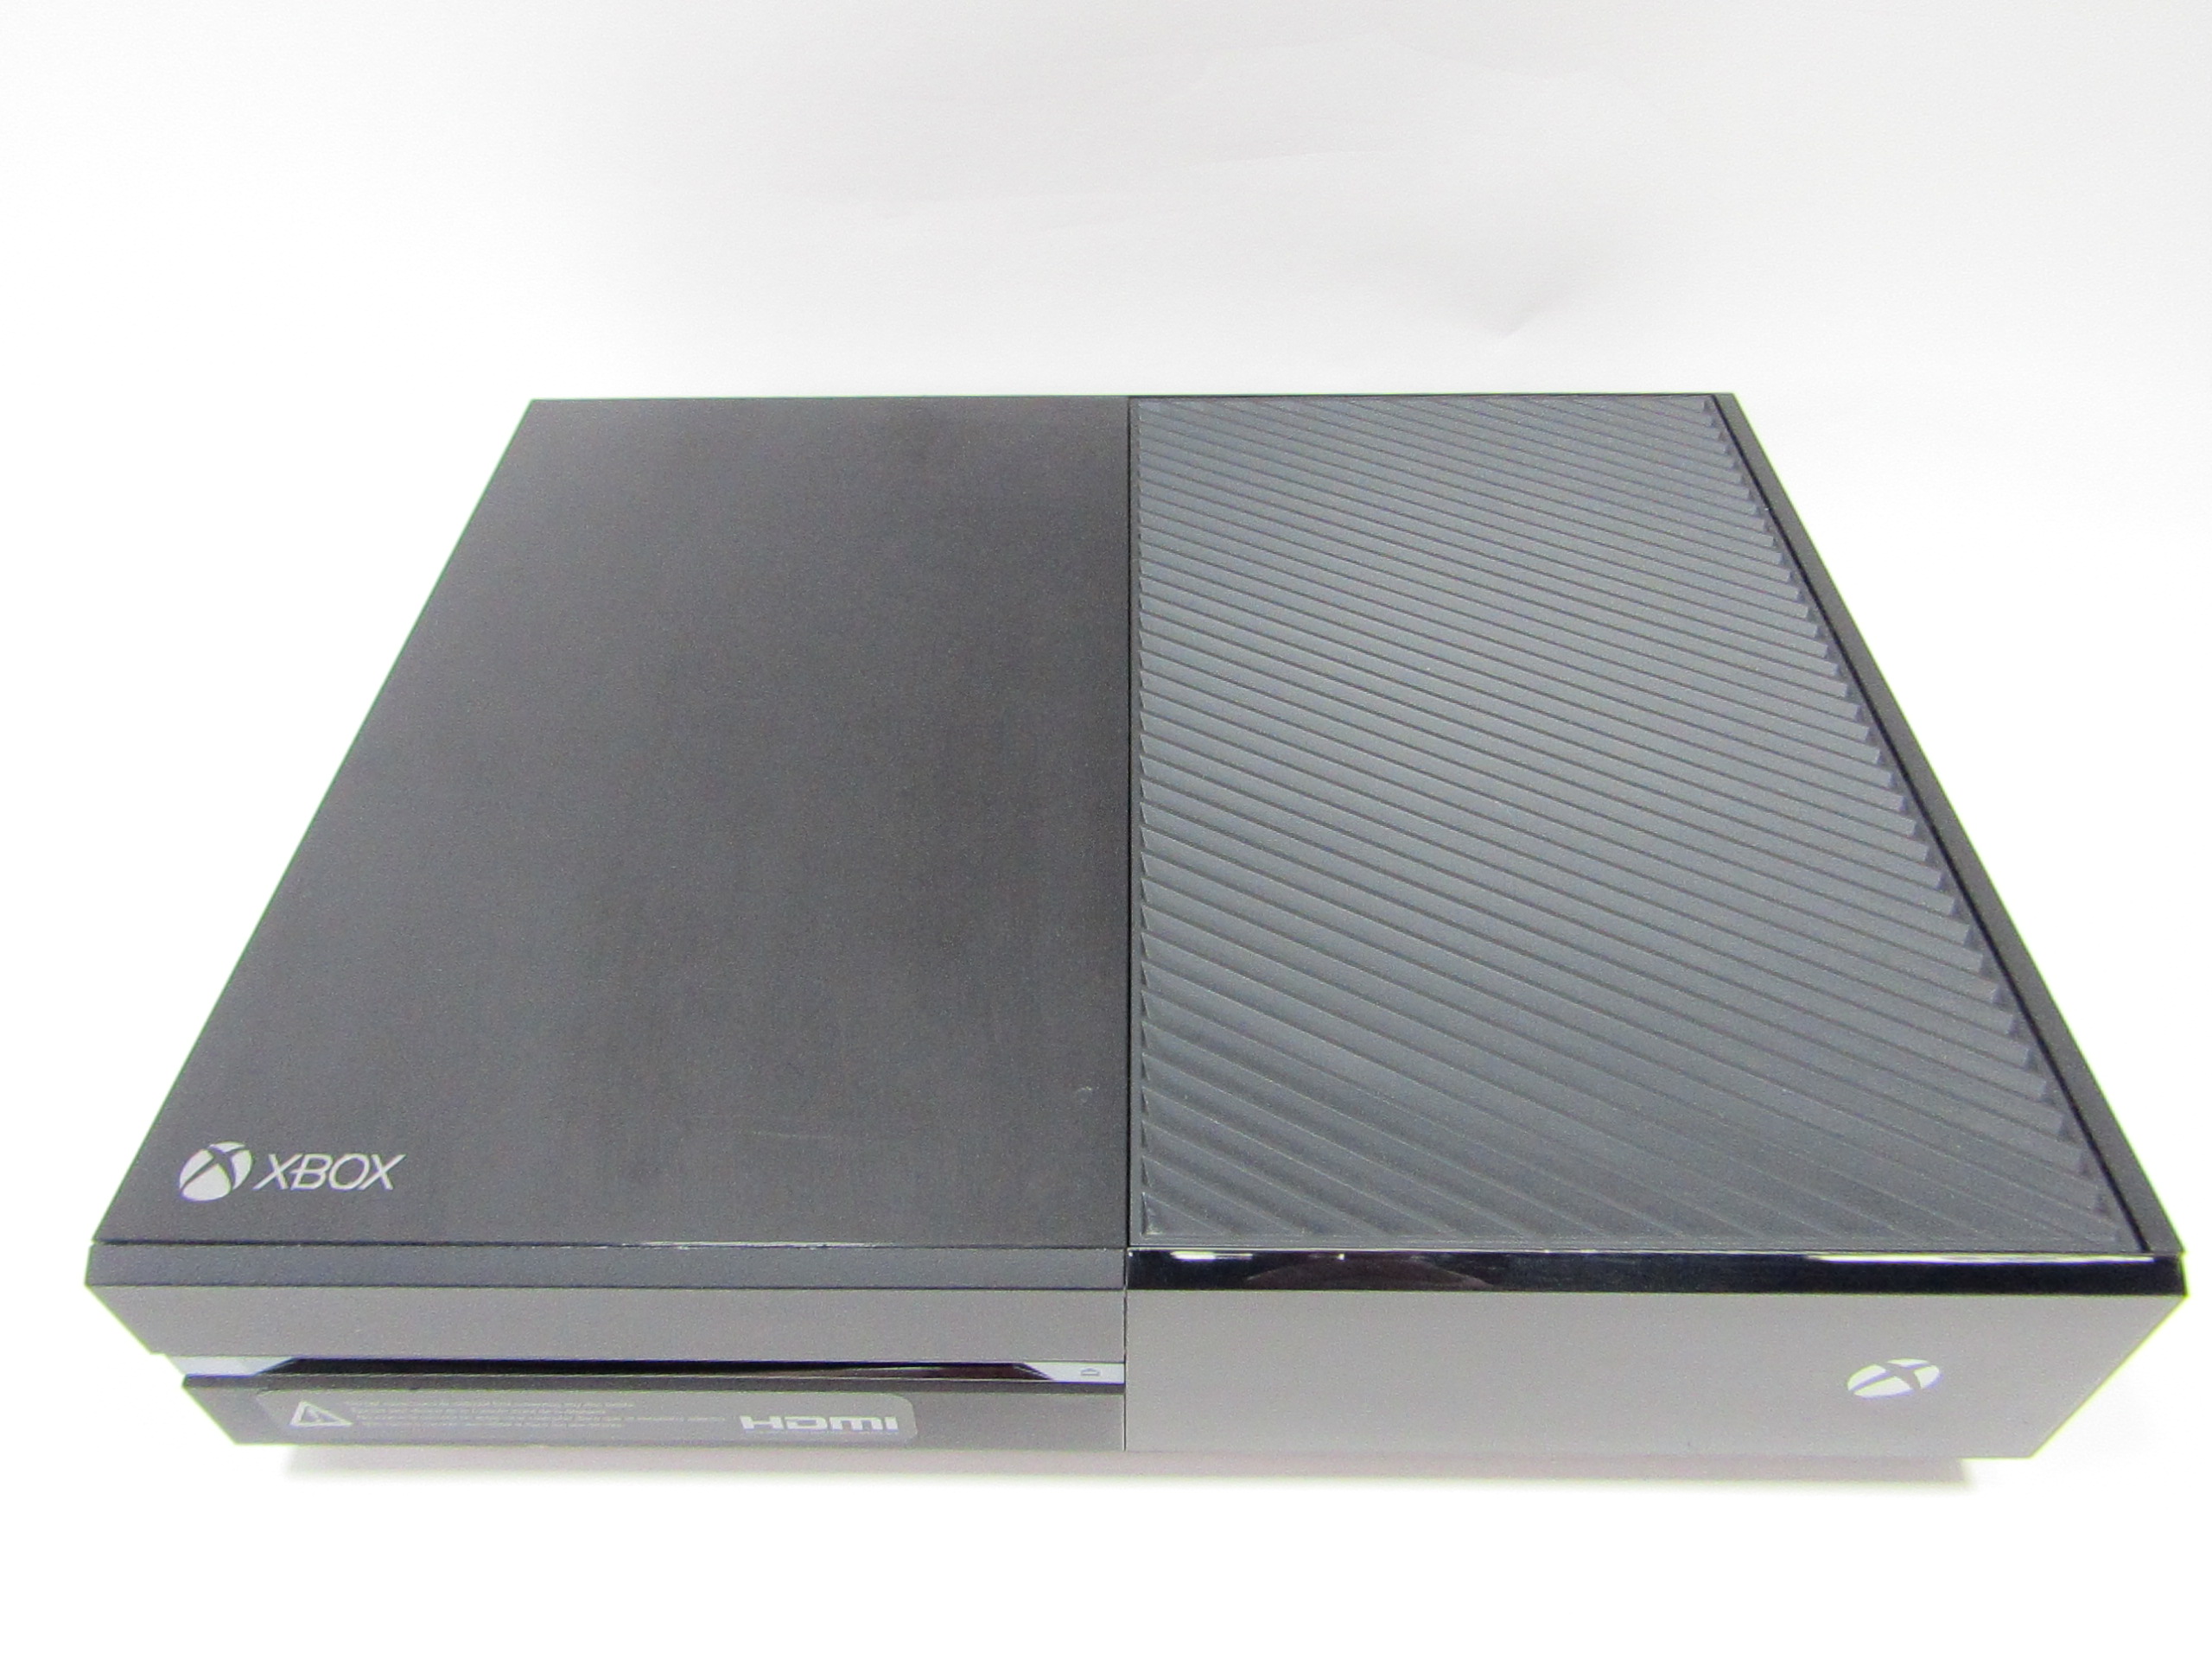 Console Microsoft Xbox One S 500gb Completo Com Nota Fiscal E Garantia - Xbox  One S 500gb